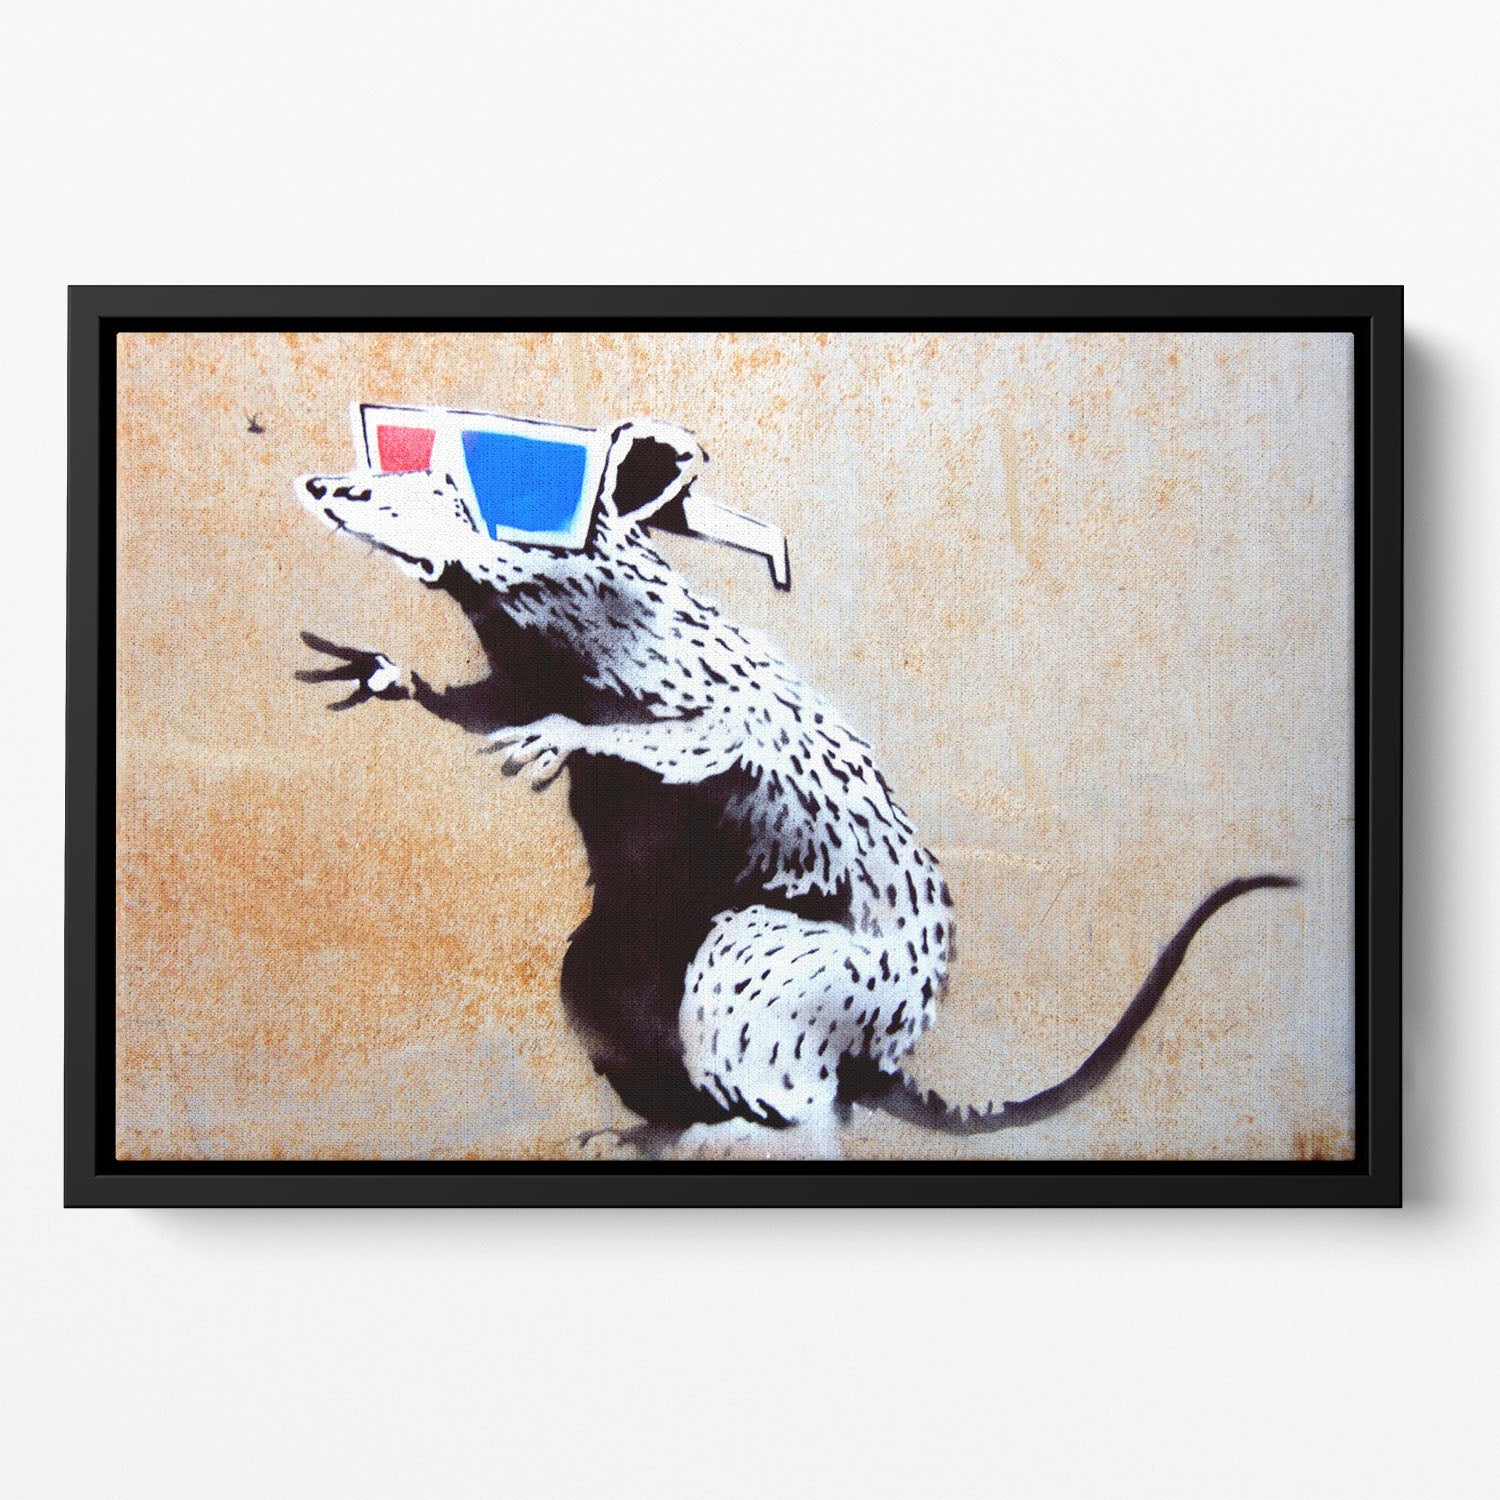 Banksy Rat Wearing 3D Glasses Floating Framed Canvas